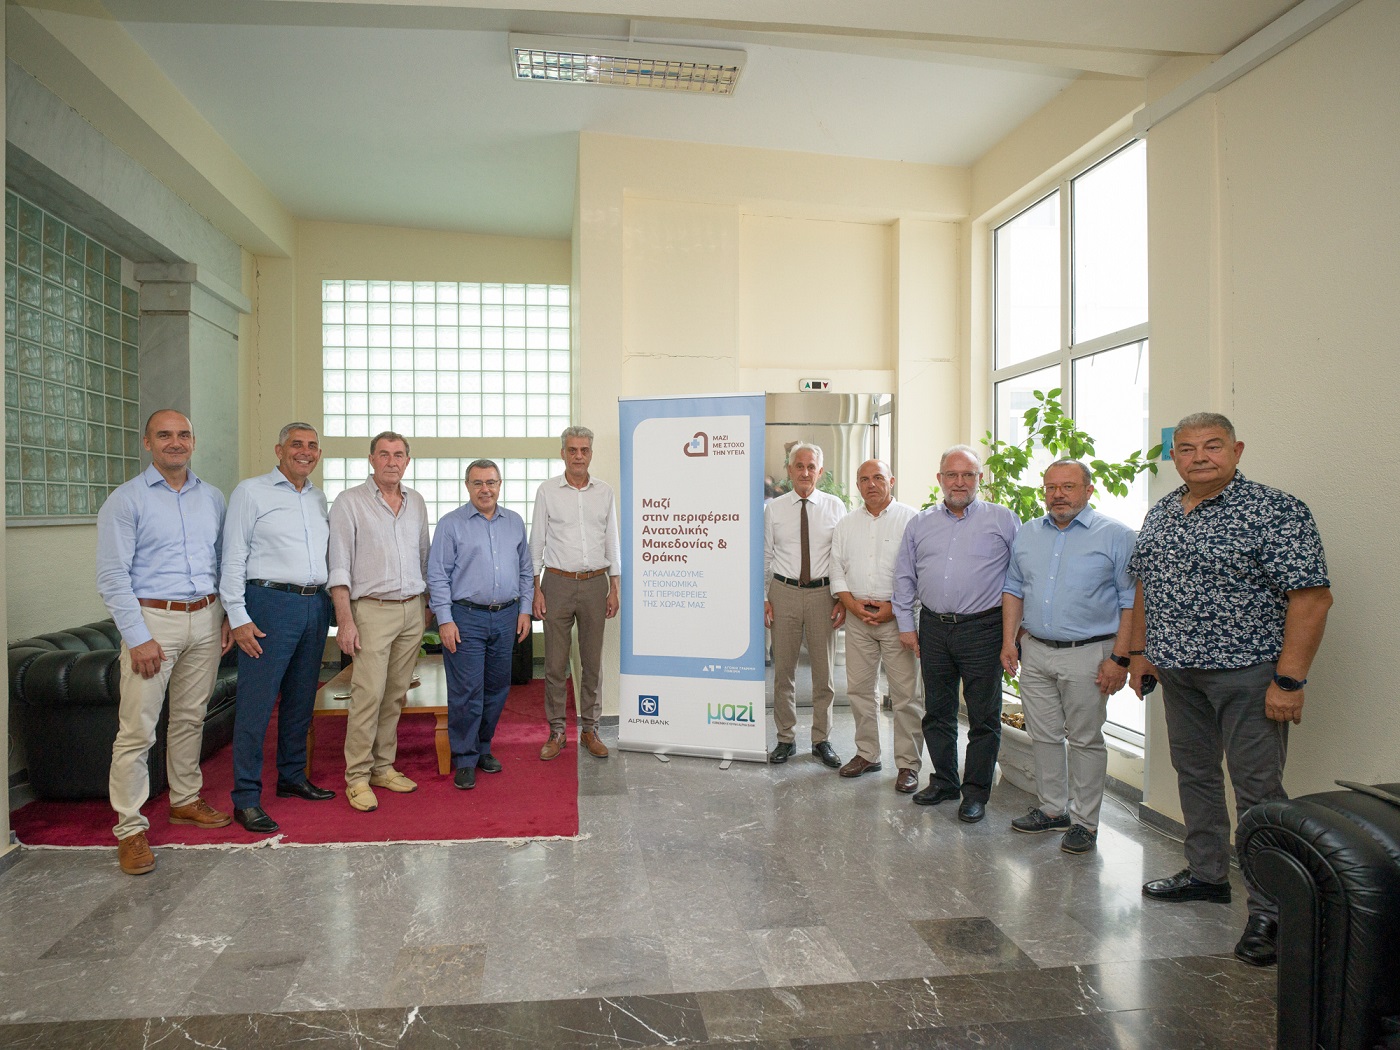 Ο CEO και μέλη της διοικητικής ομάδας της Alpha Bank πλαισιωμένοι από τους εκπροσώπους της τοπικής αυτοδιοίκησης της Περιφέρειας Ανατολικής Μακεδονίας και Θράκης@ΔΤ